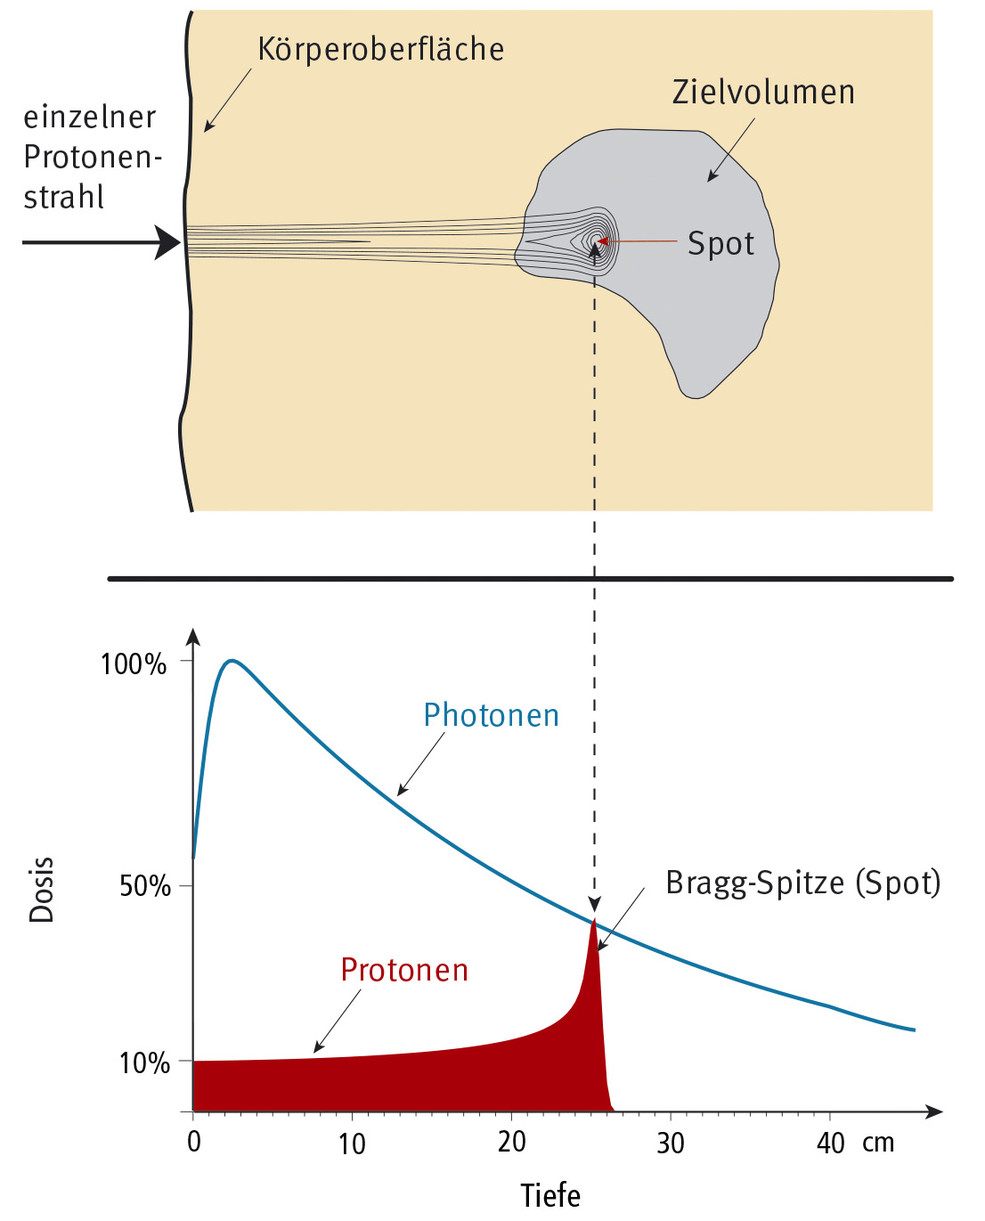 Dose de rayonnement d'un faisceau de protons de la taille d'un crayon le long de la profondeur de pénétration dans le corps. La portée de ces protons est de 25 centimètres. En haut, la répartition de la dose sous forme de courbes de niveaux. En bas, les valeurs de la dose en fonction de la profondeur, comparées avec l’évolution d’une dose de photons.